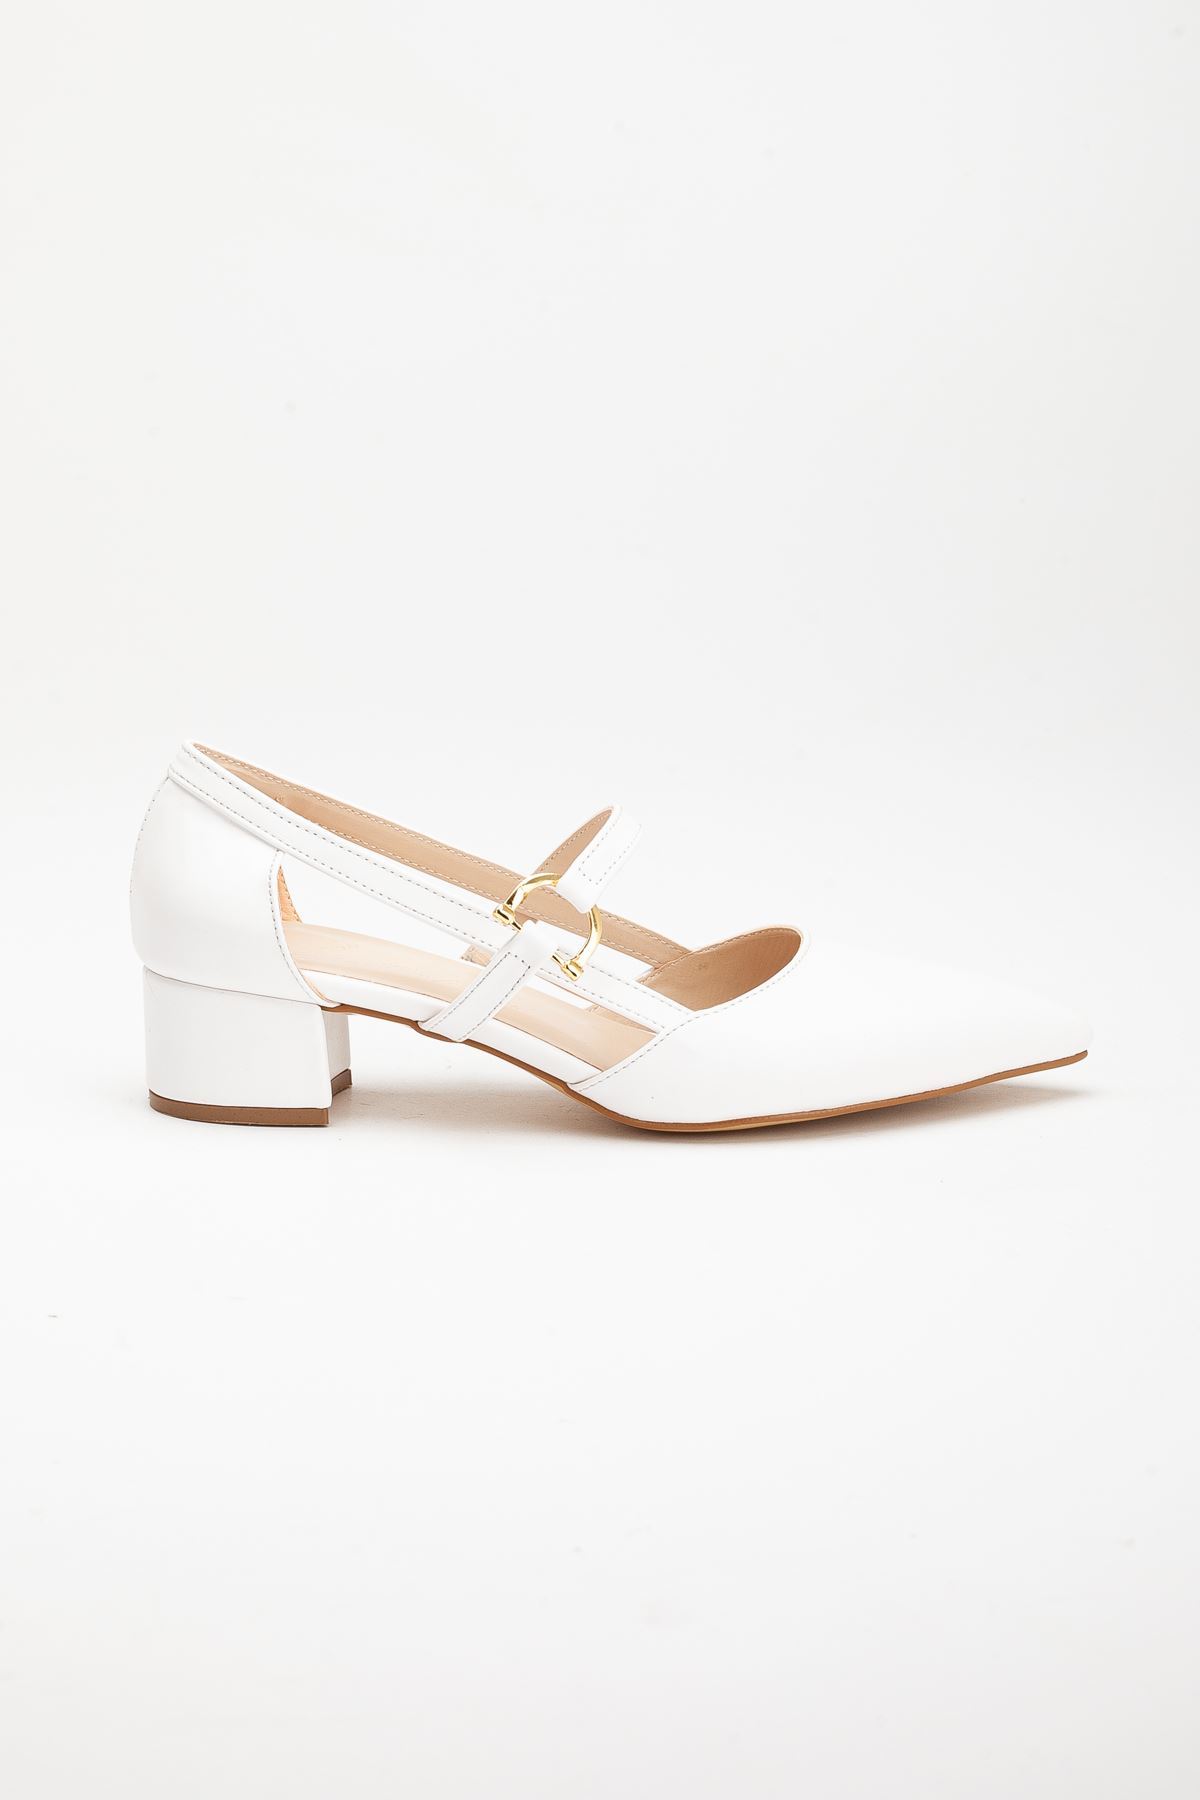 Loni Kadın Toka Detaylı Topuklu Ayakkabı Beyaz Cilt